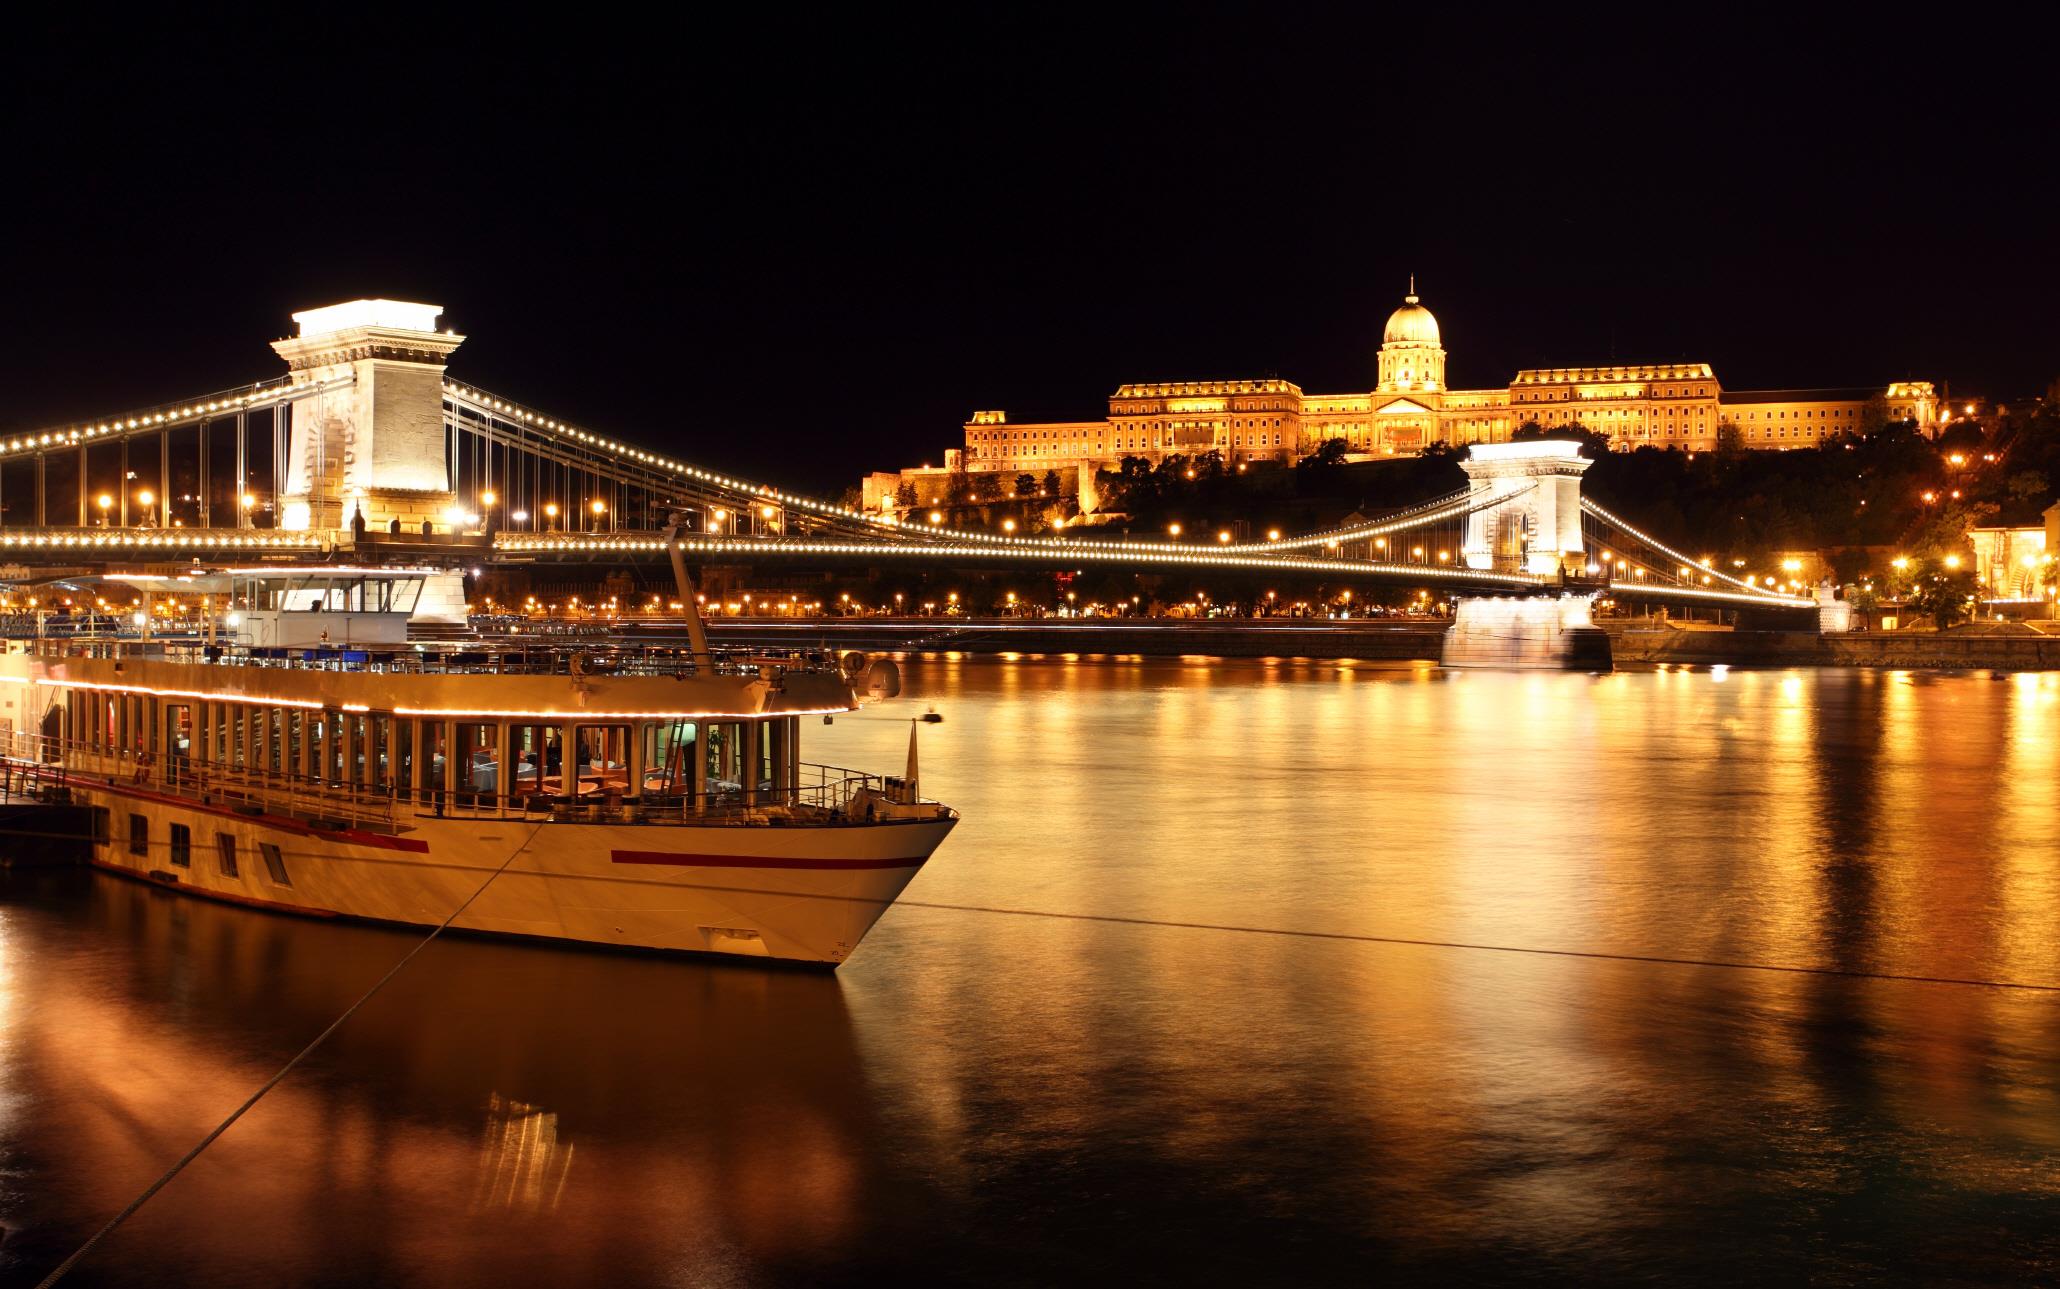 다뉴브강 유람선 야경투어  Danube Cruise Night Tour